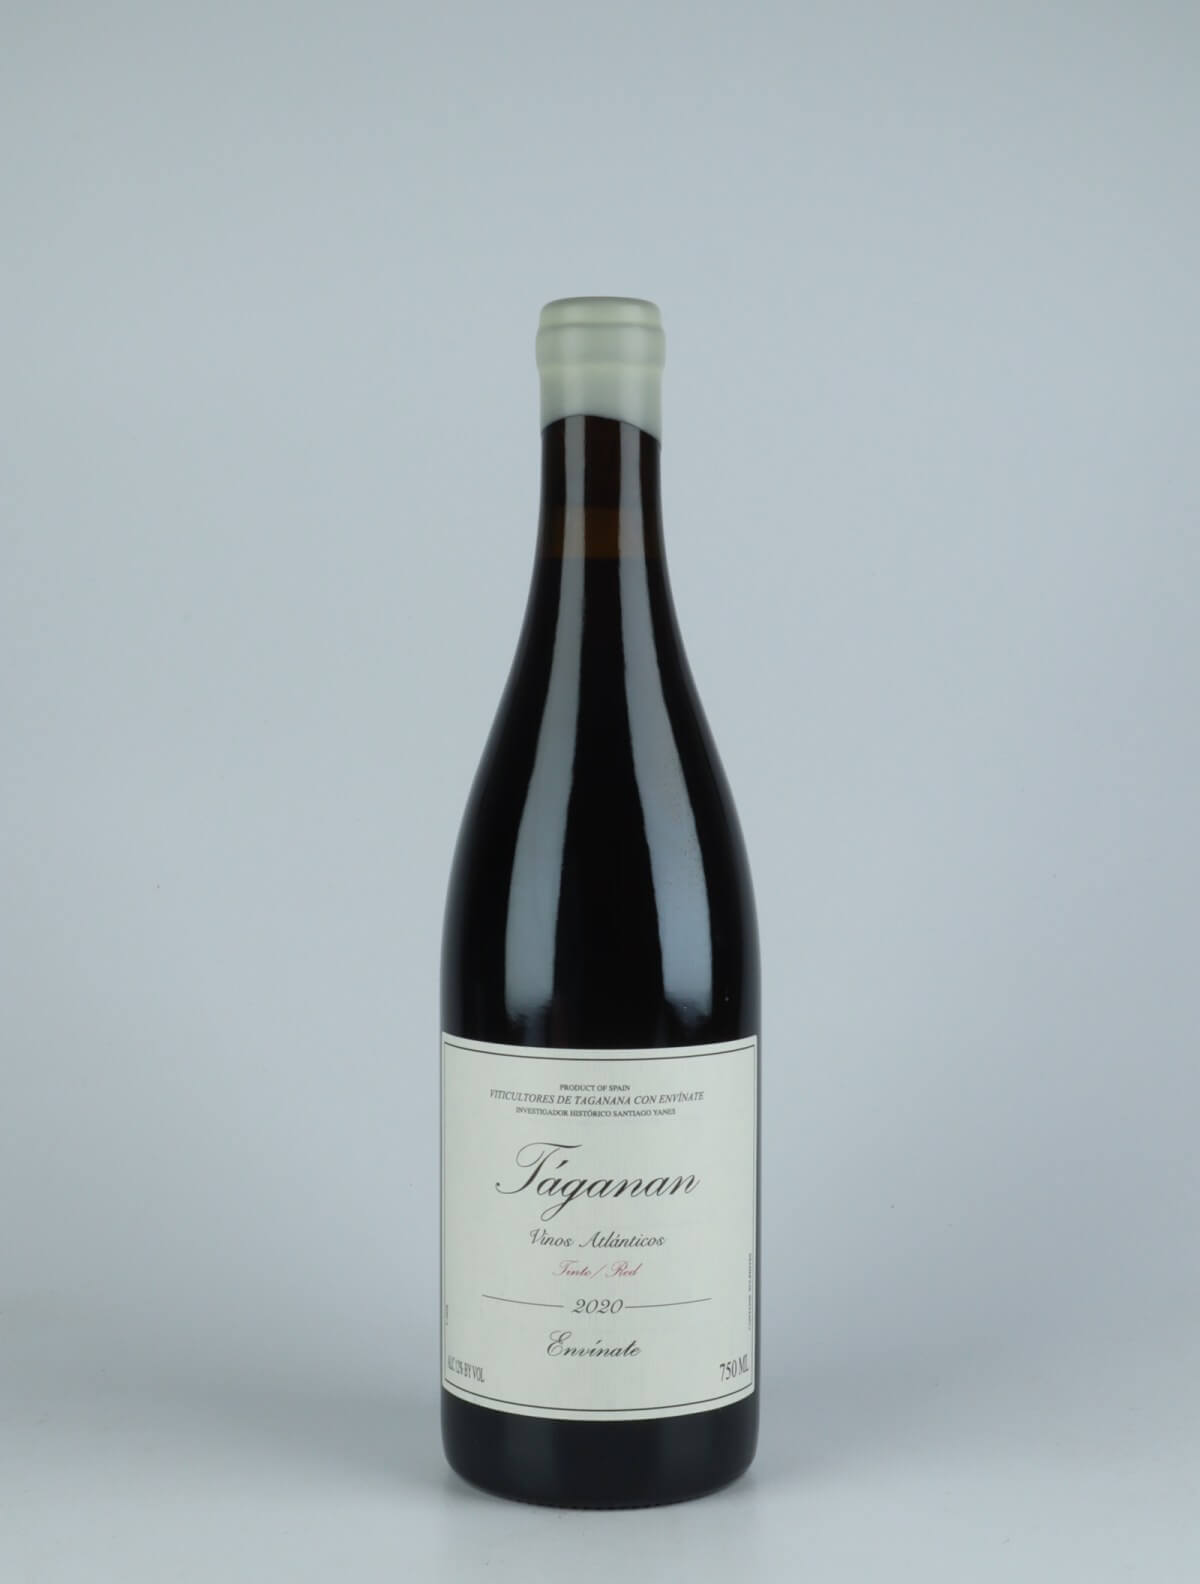 En flaske 2020 Taganan Tinto - Tenerife Rødvin fra Envínate, Tenerife i Spanien